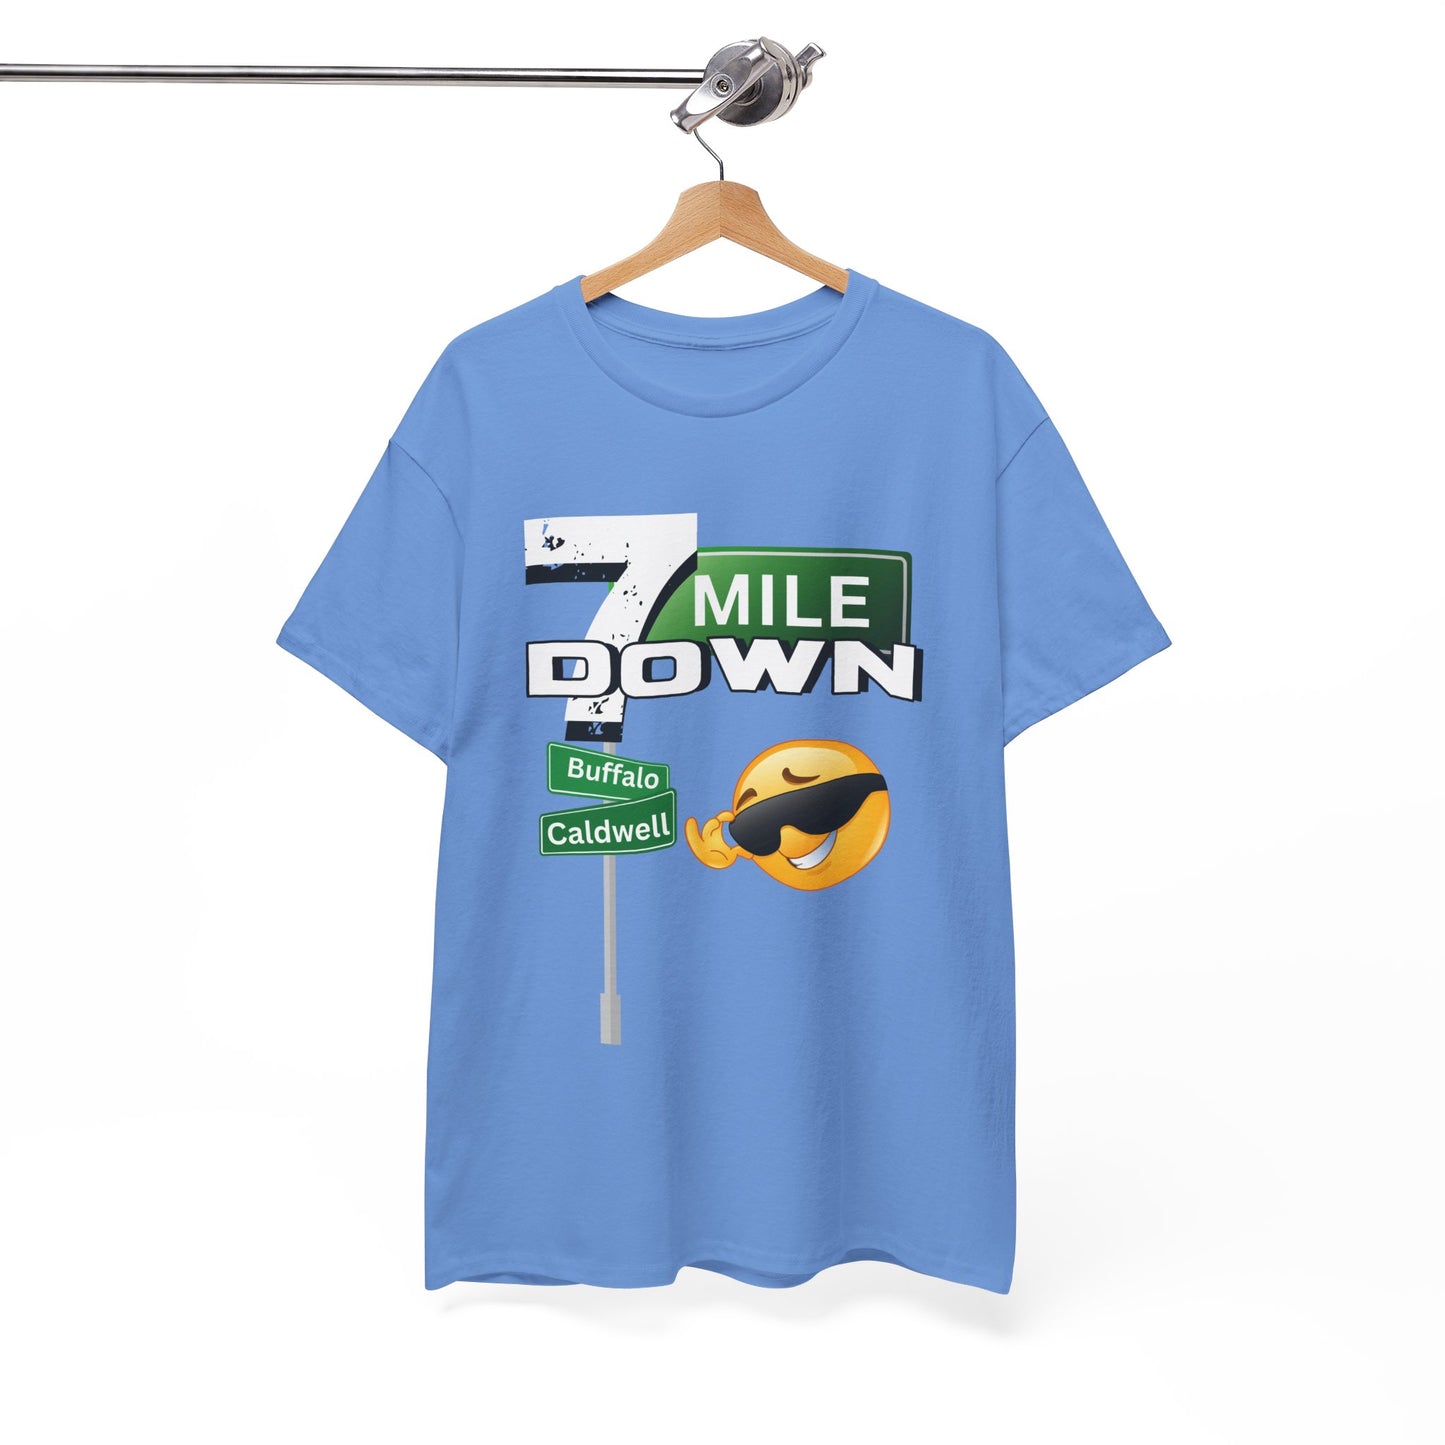 Unisex Heavy Cotton Graphic design (7 Mile Down) T-shirt